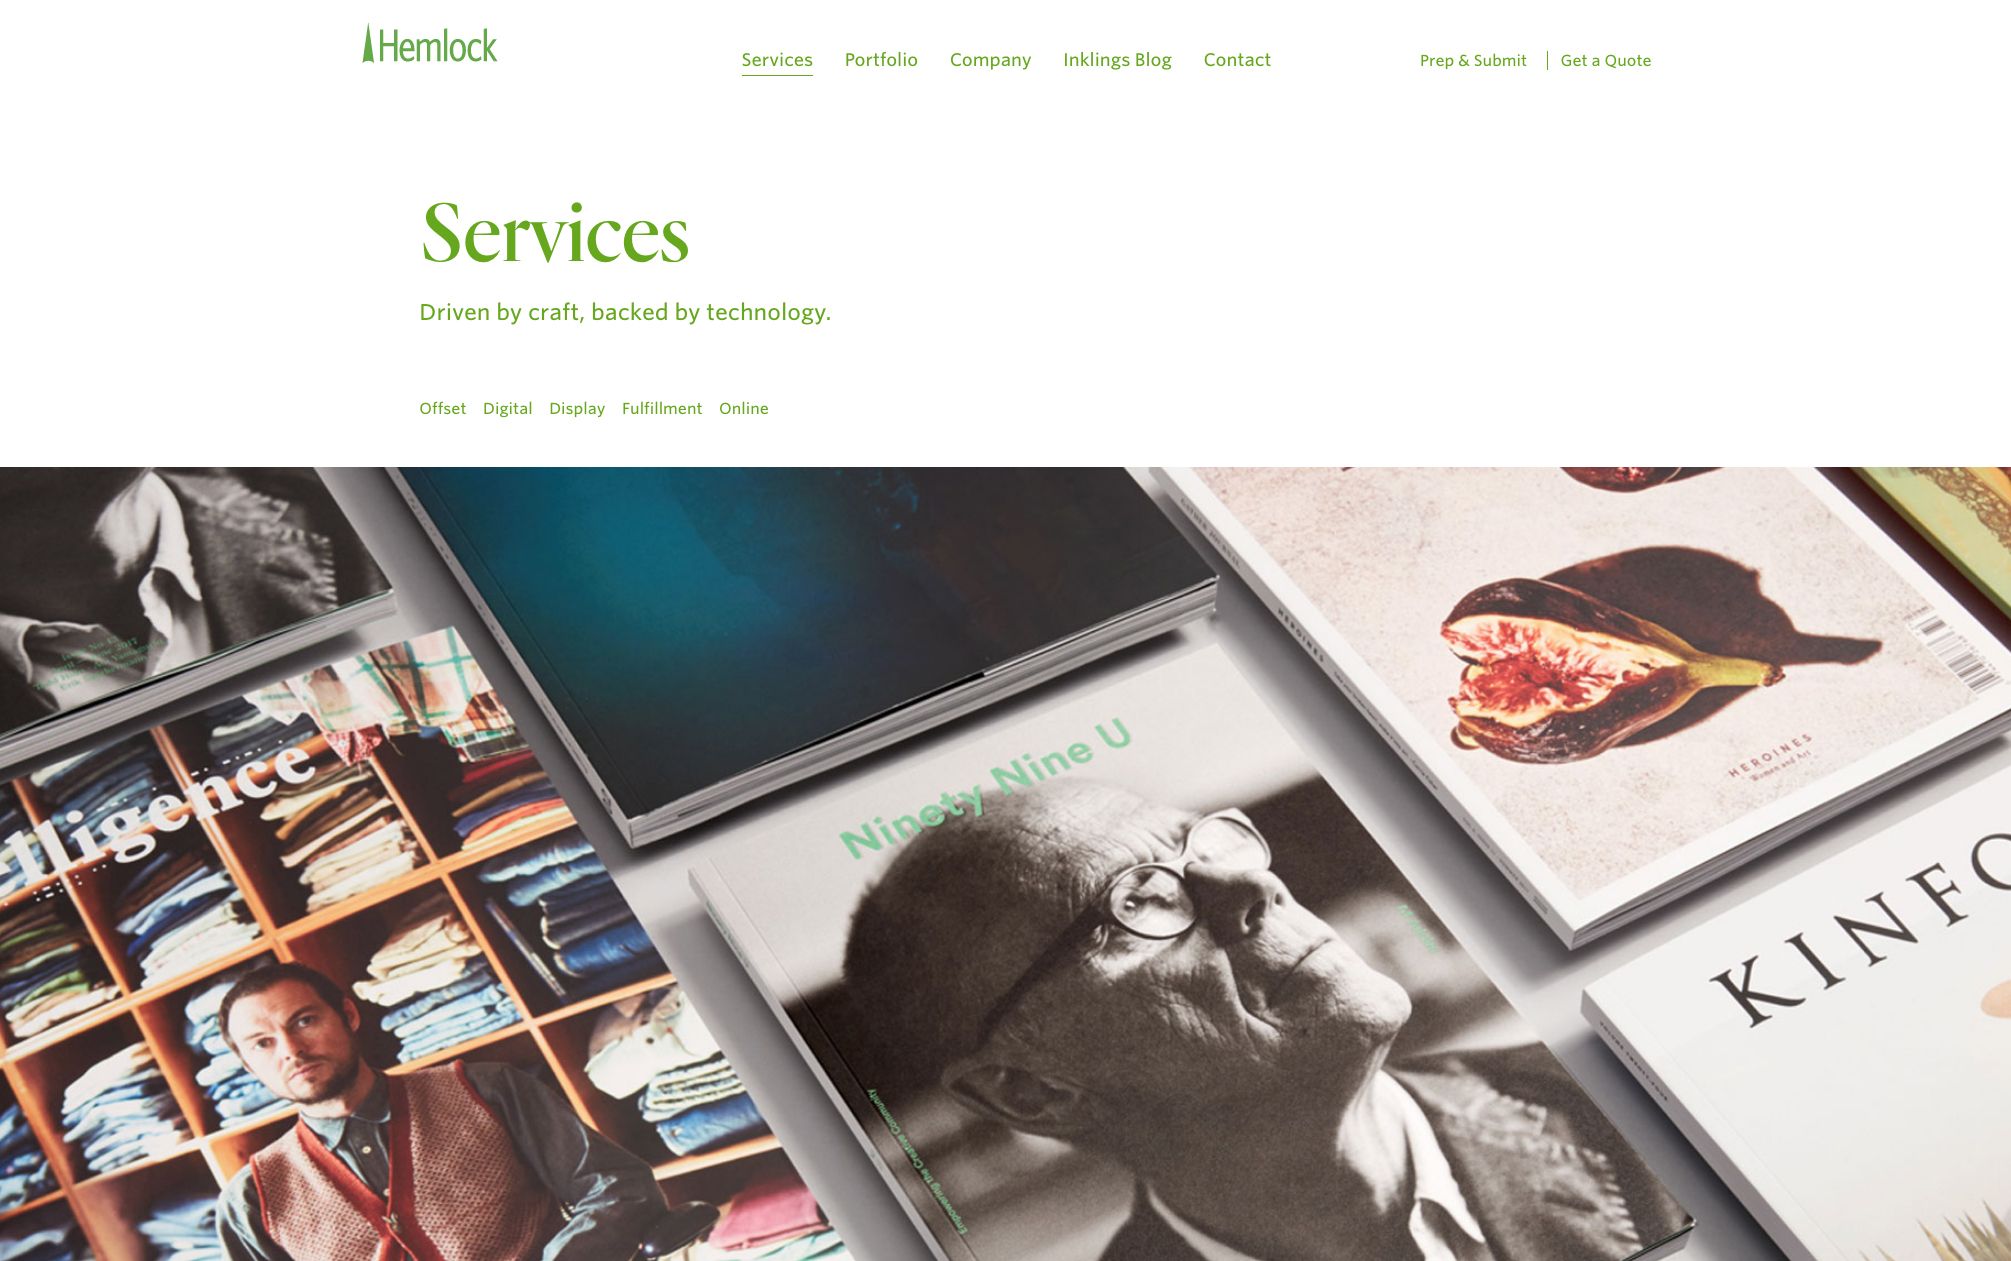 Hemlock_Desktop_Services_1